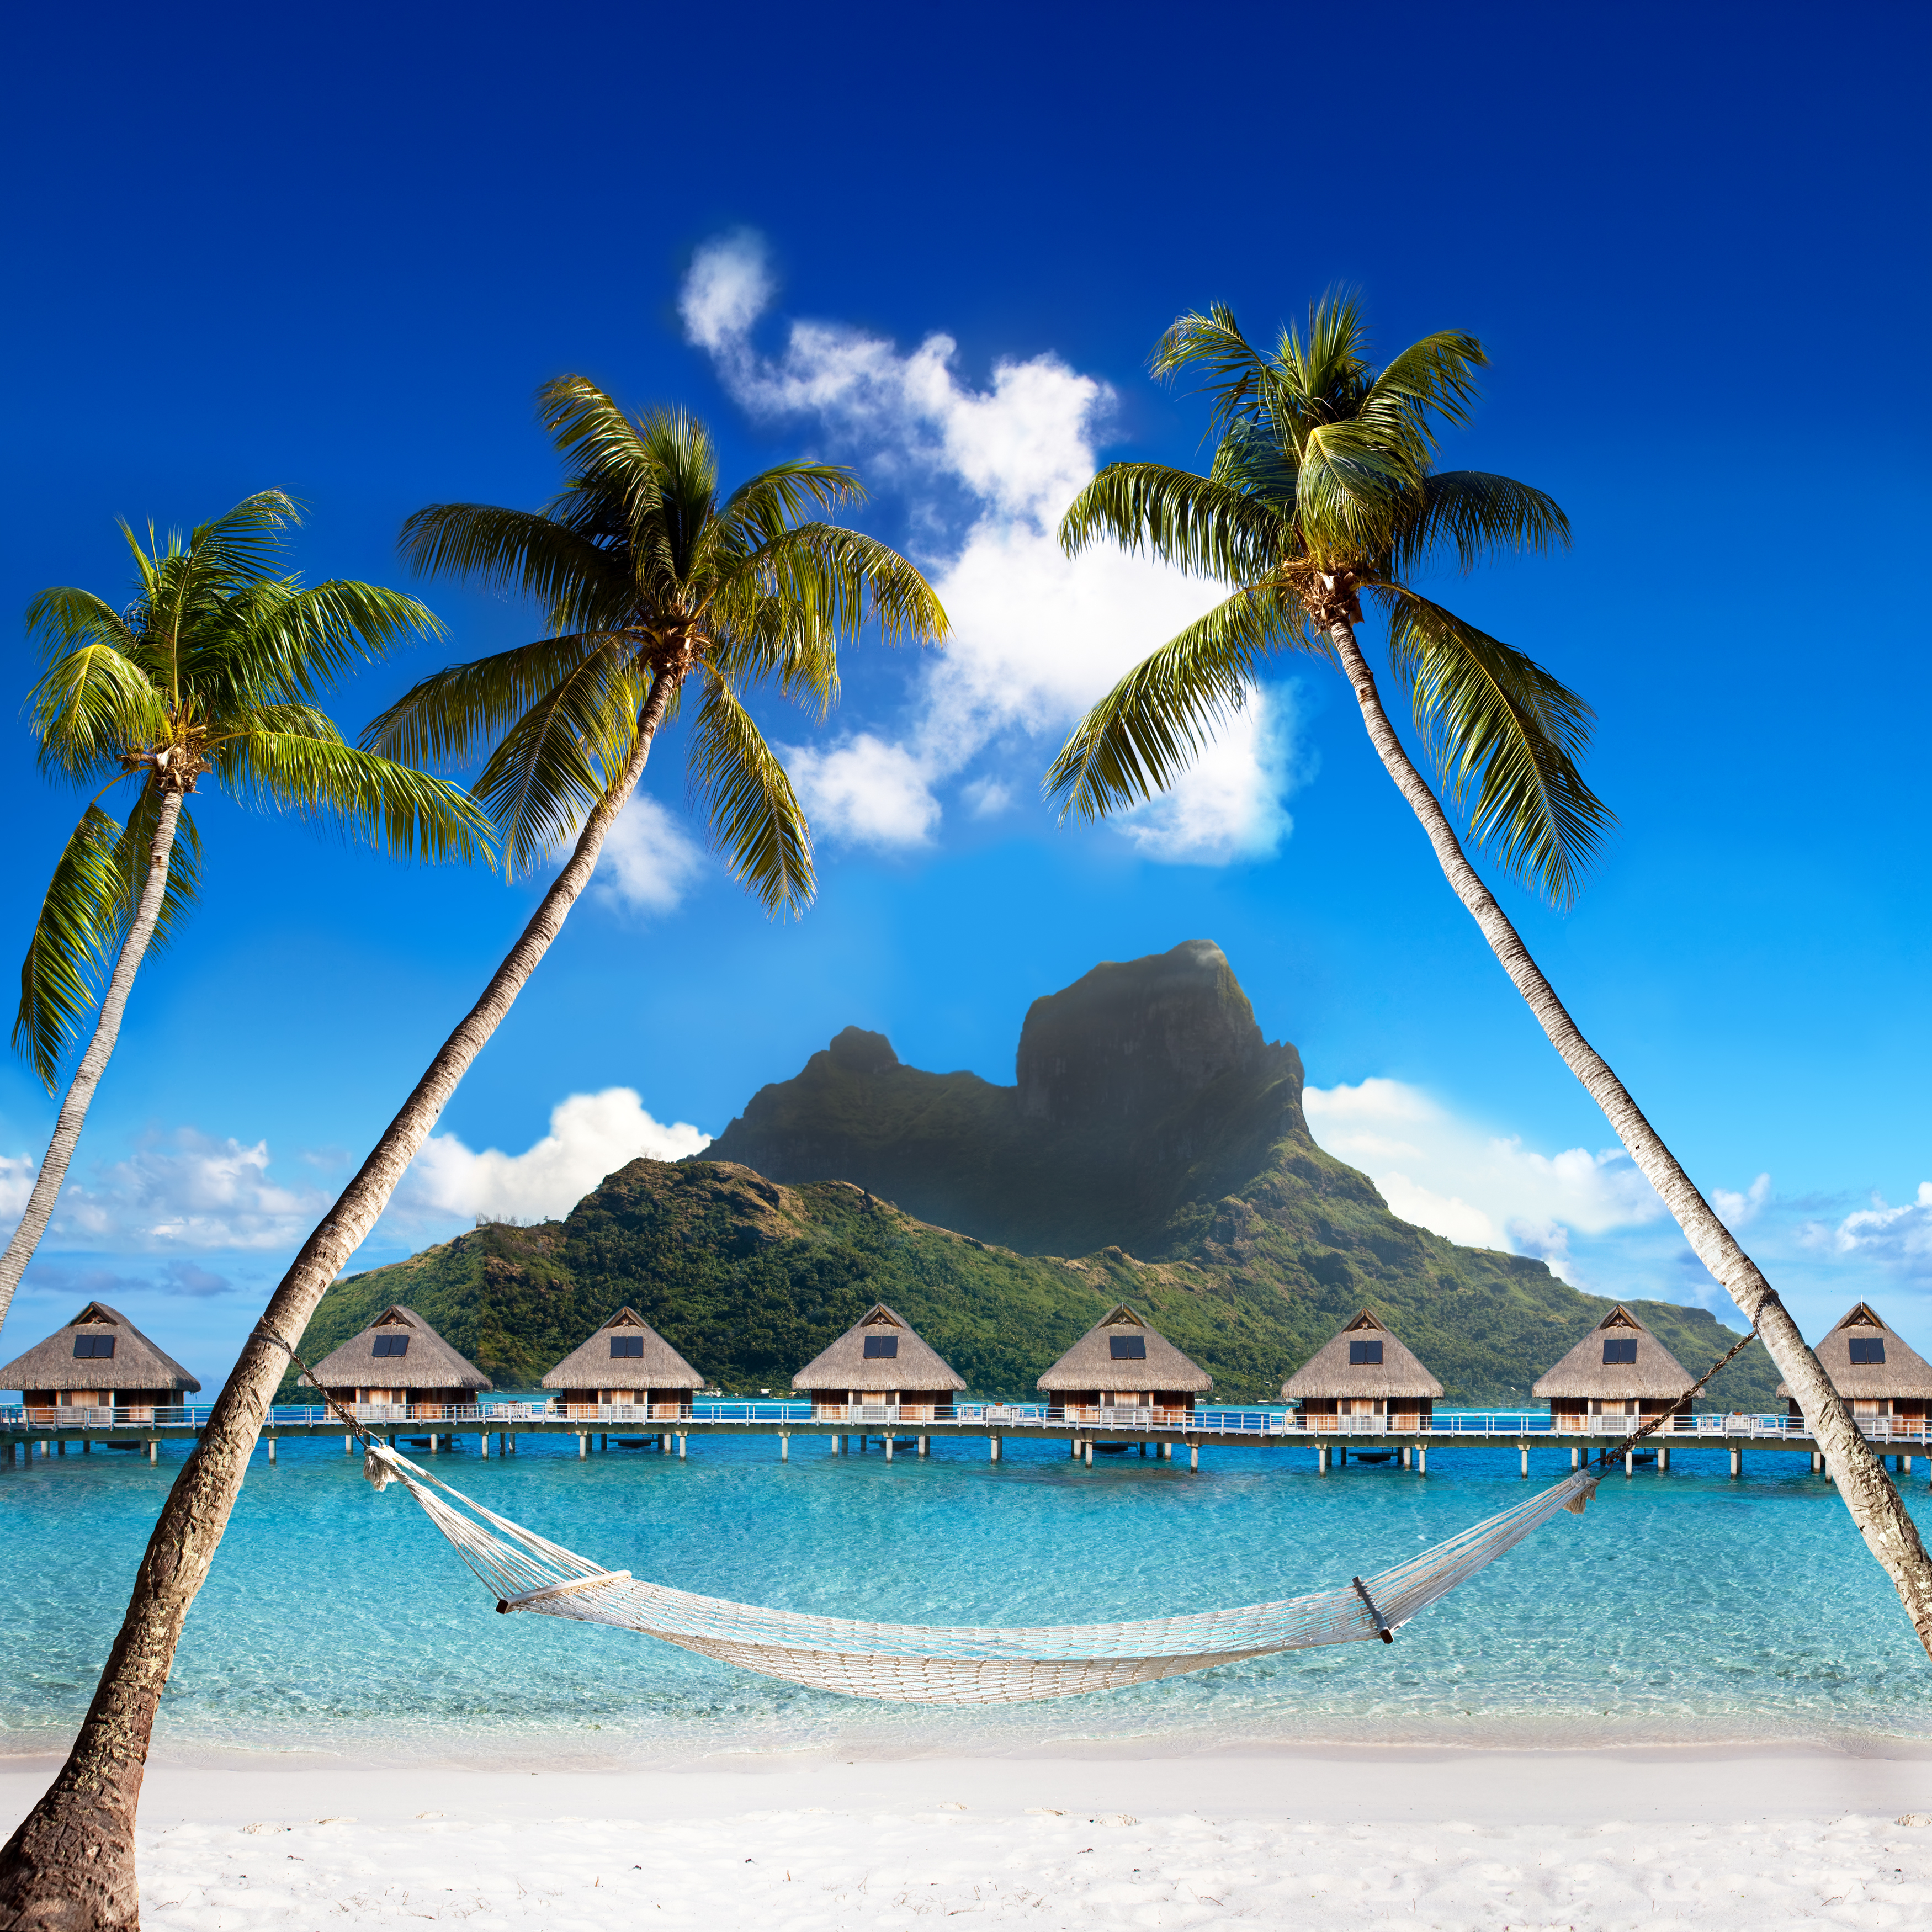 Ein Resort in Bora Bora | Quelle: Shutterstock